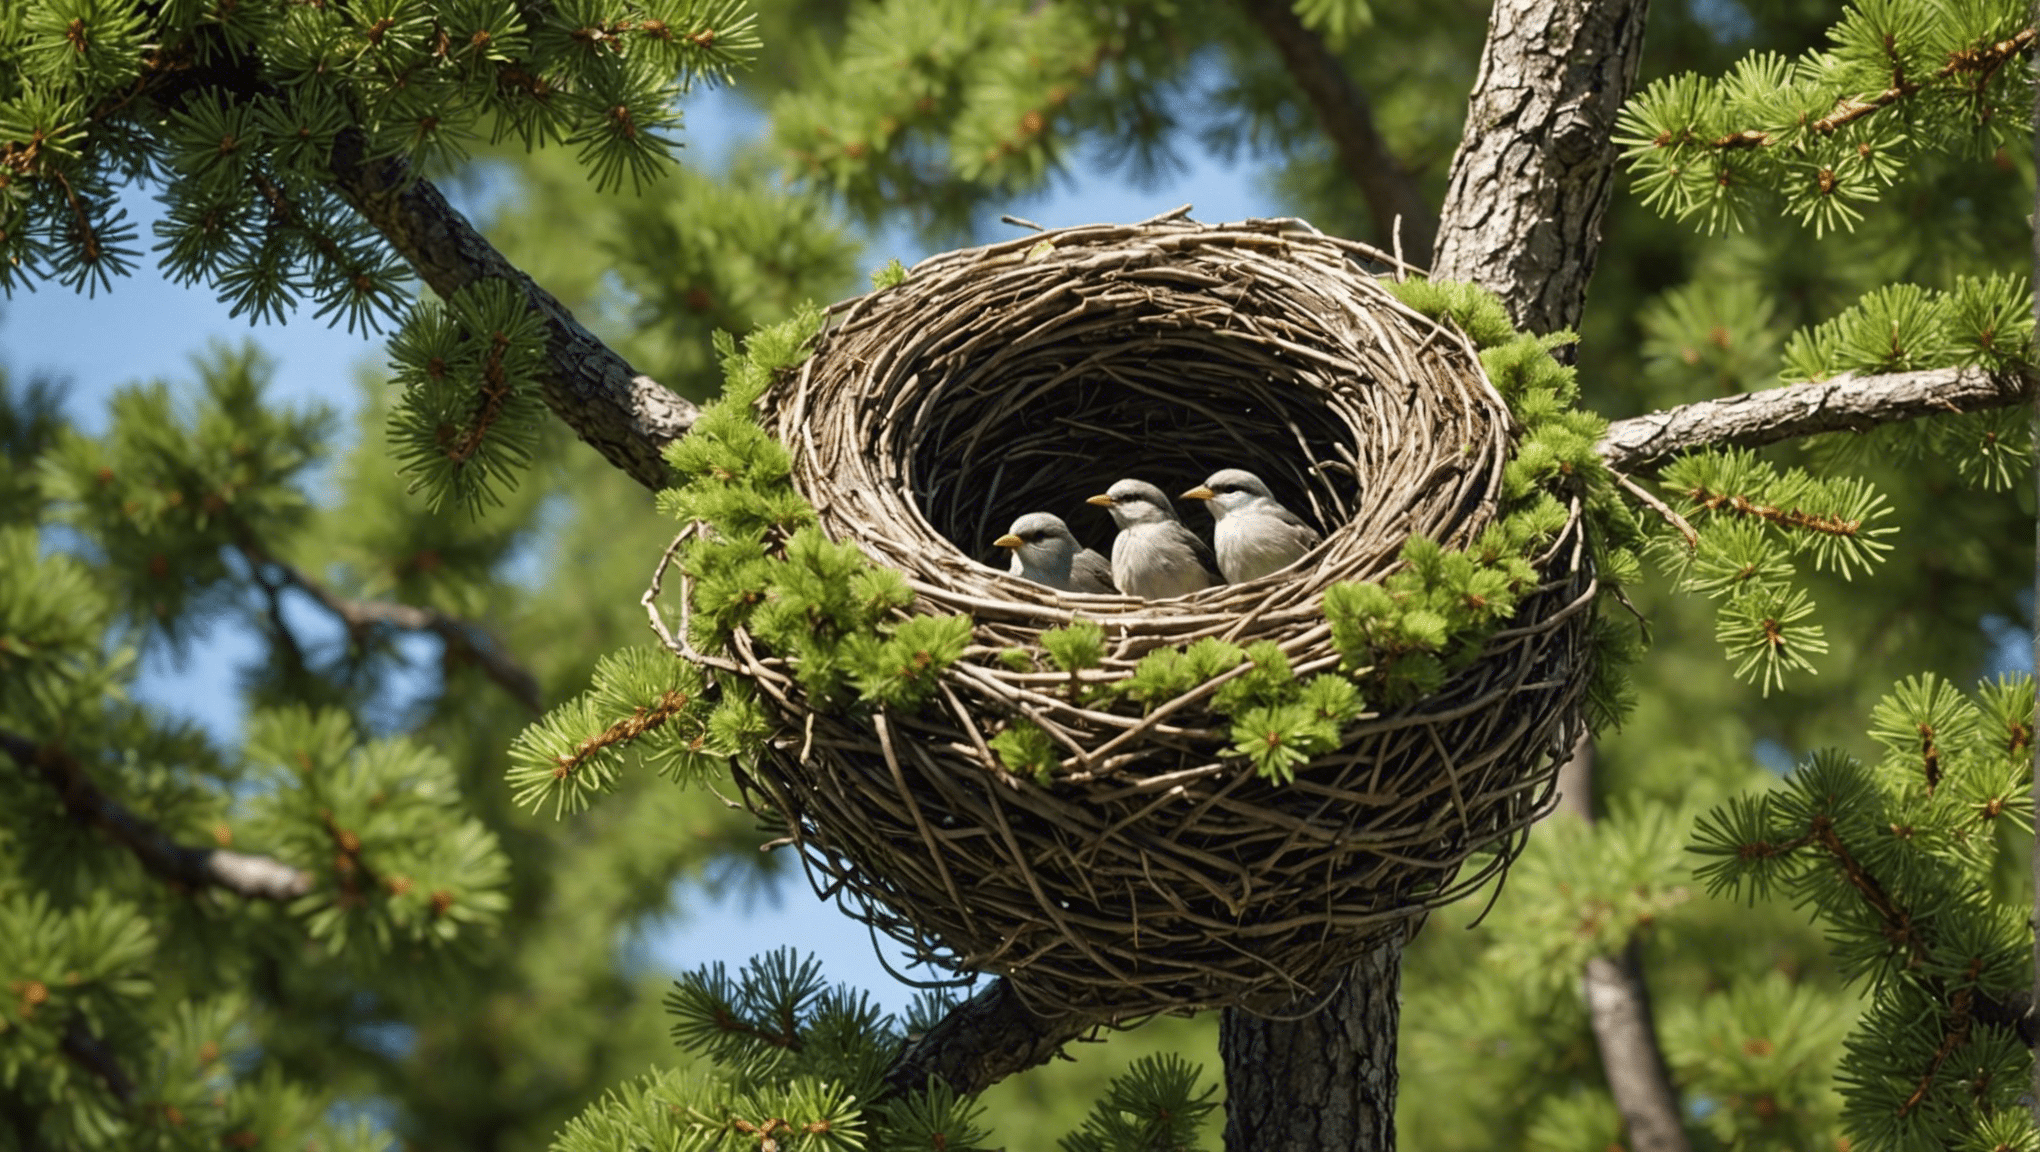 opdage, hvad der gør fuglenes reden gran så unik og tiltalende i denne informative artikel. lære om dens særpræg og egenskaber, der adskiller den fra andre træer.